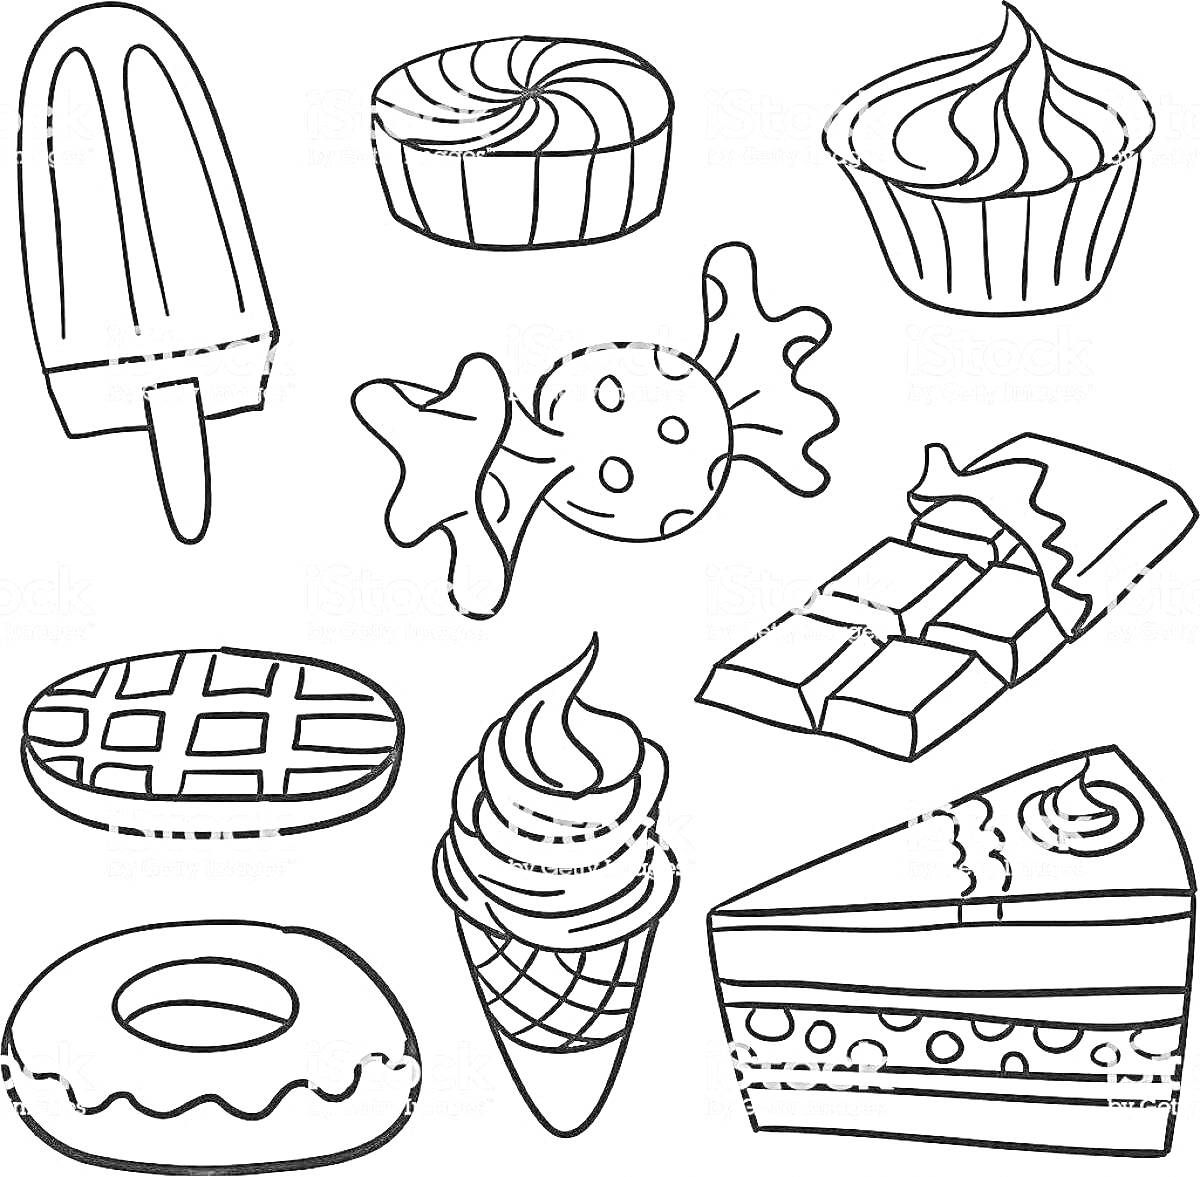 Раскраска Леденец на палочке, кекс, капкейк, конфета, шоколадный батончик, вафля, мороженое в рожке, пончик, кусок торта